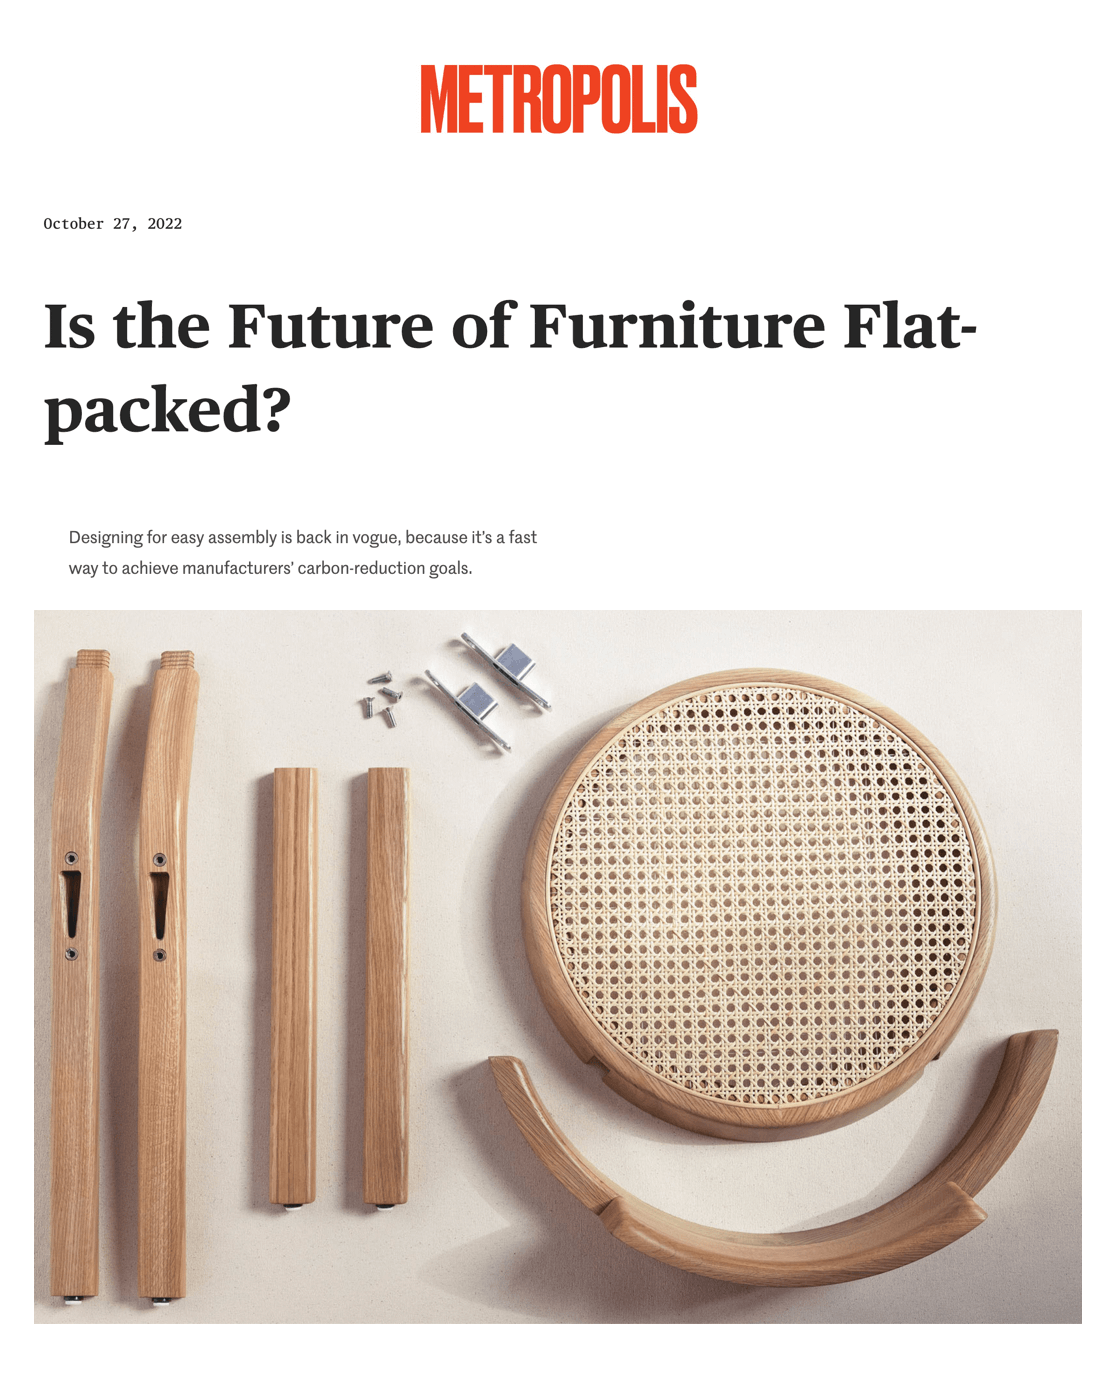 L'avenir des meubles est-il à l'emballage plat ?